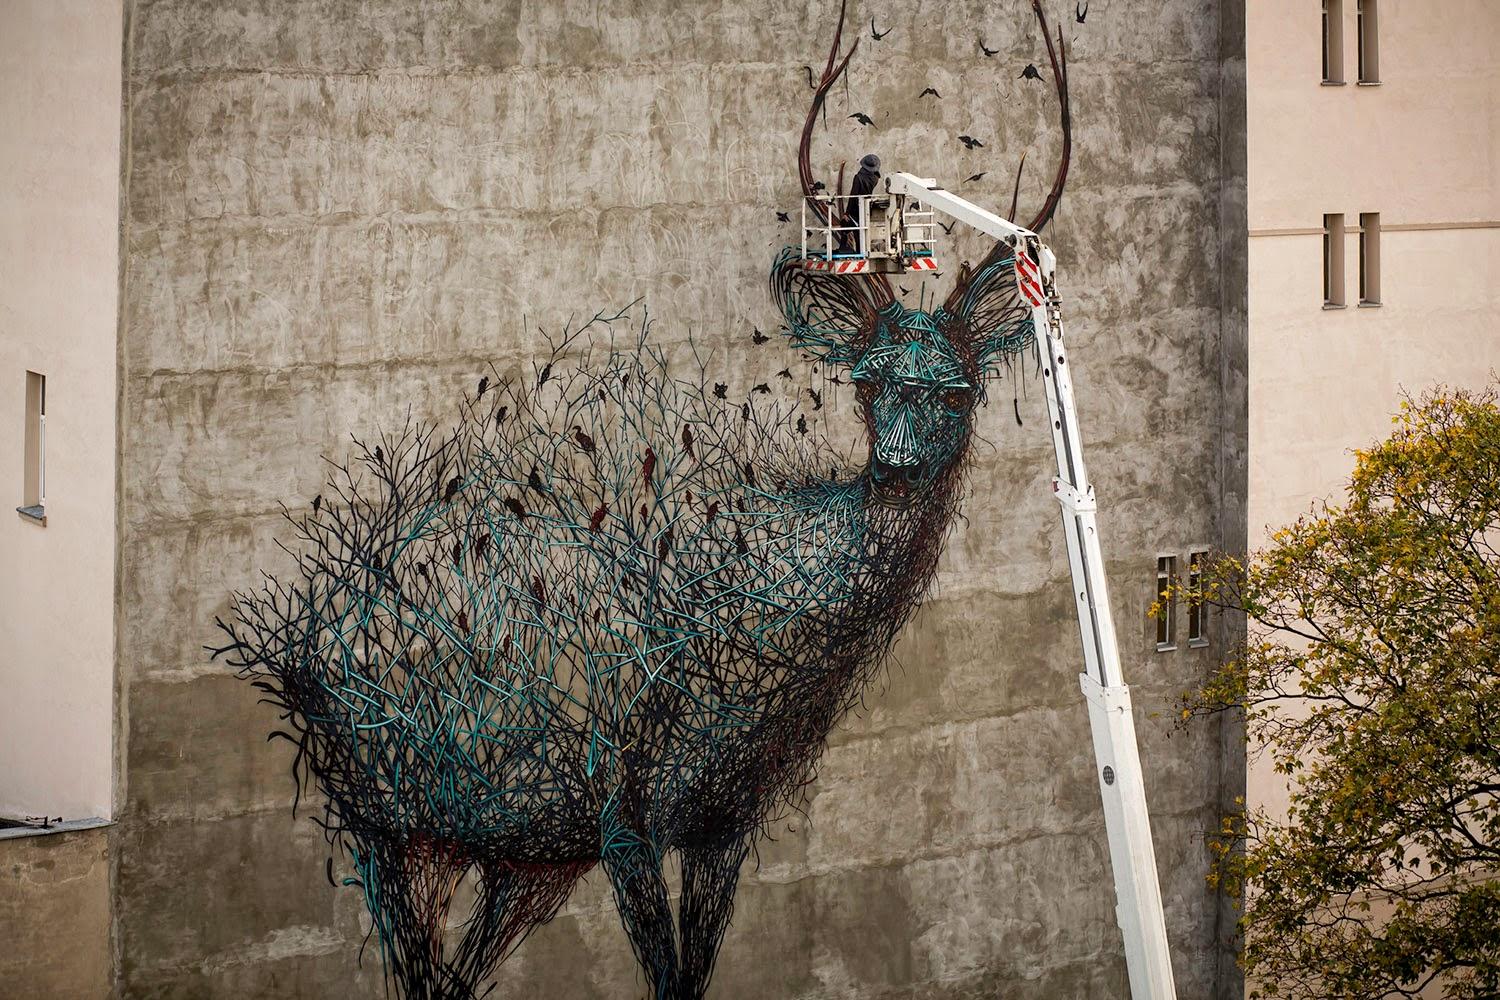 Le cerf de Lodz par DALest en Pologne - Street Art